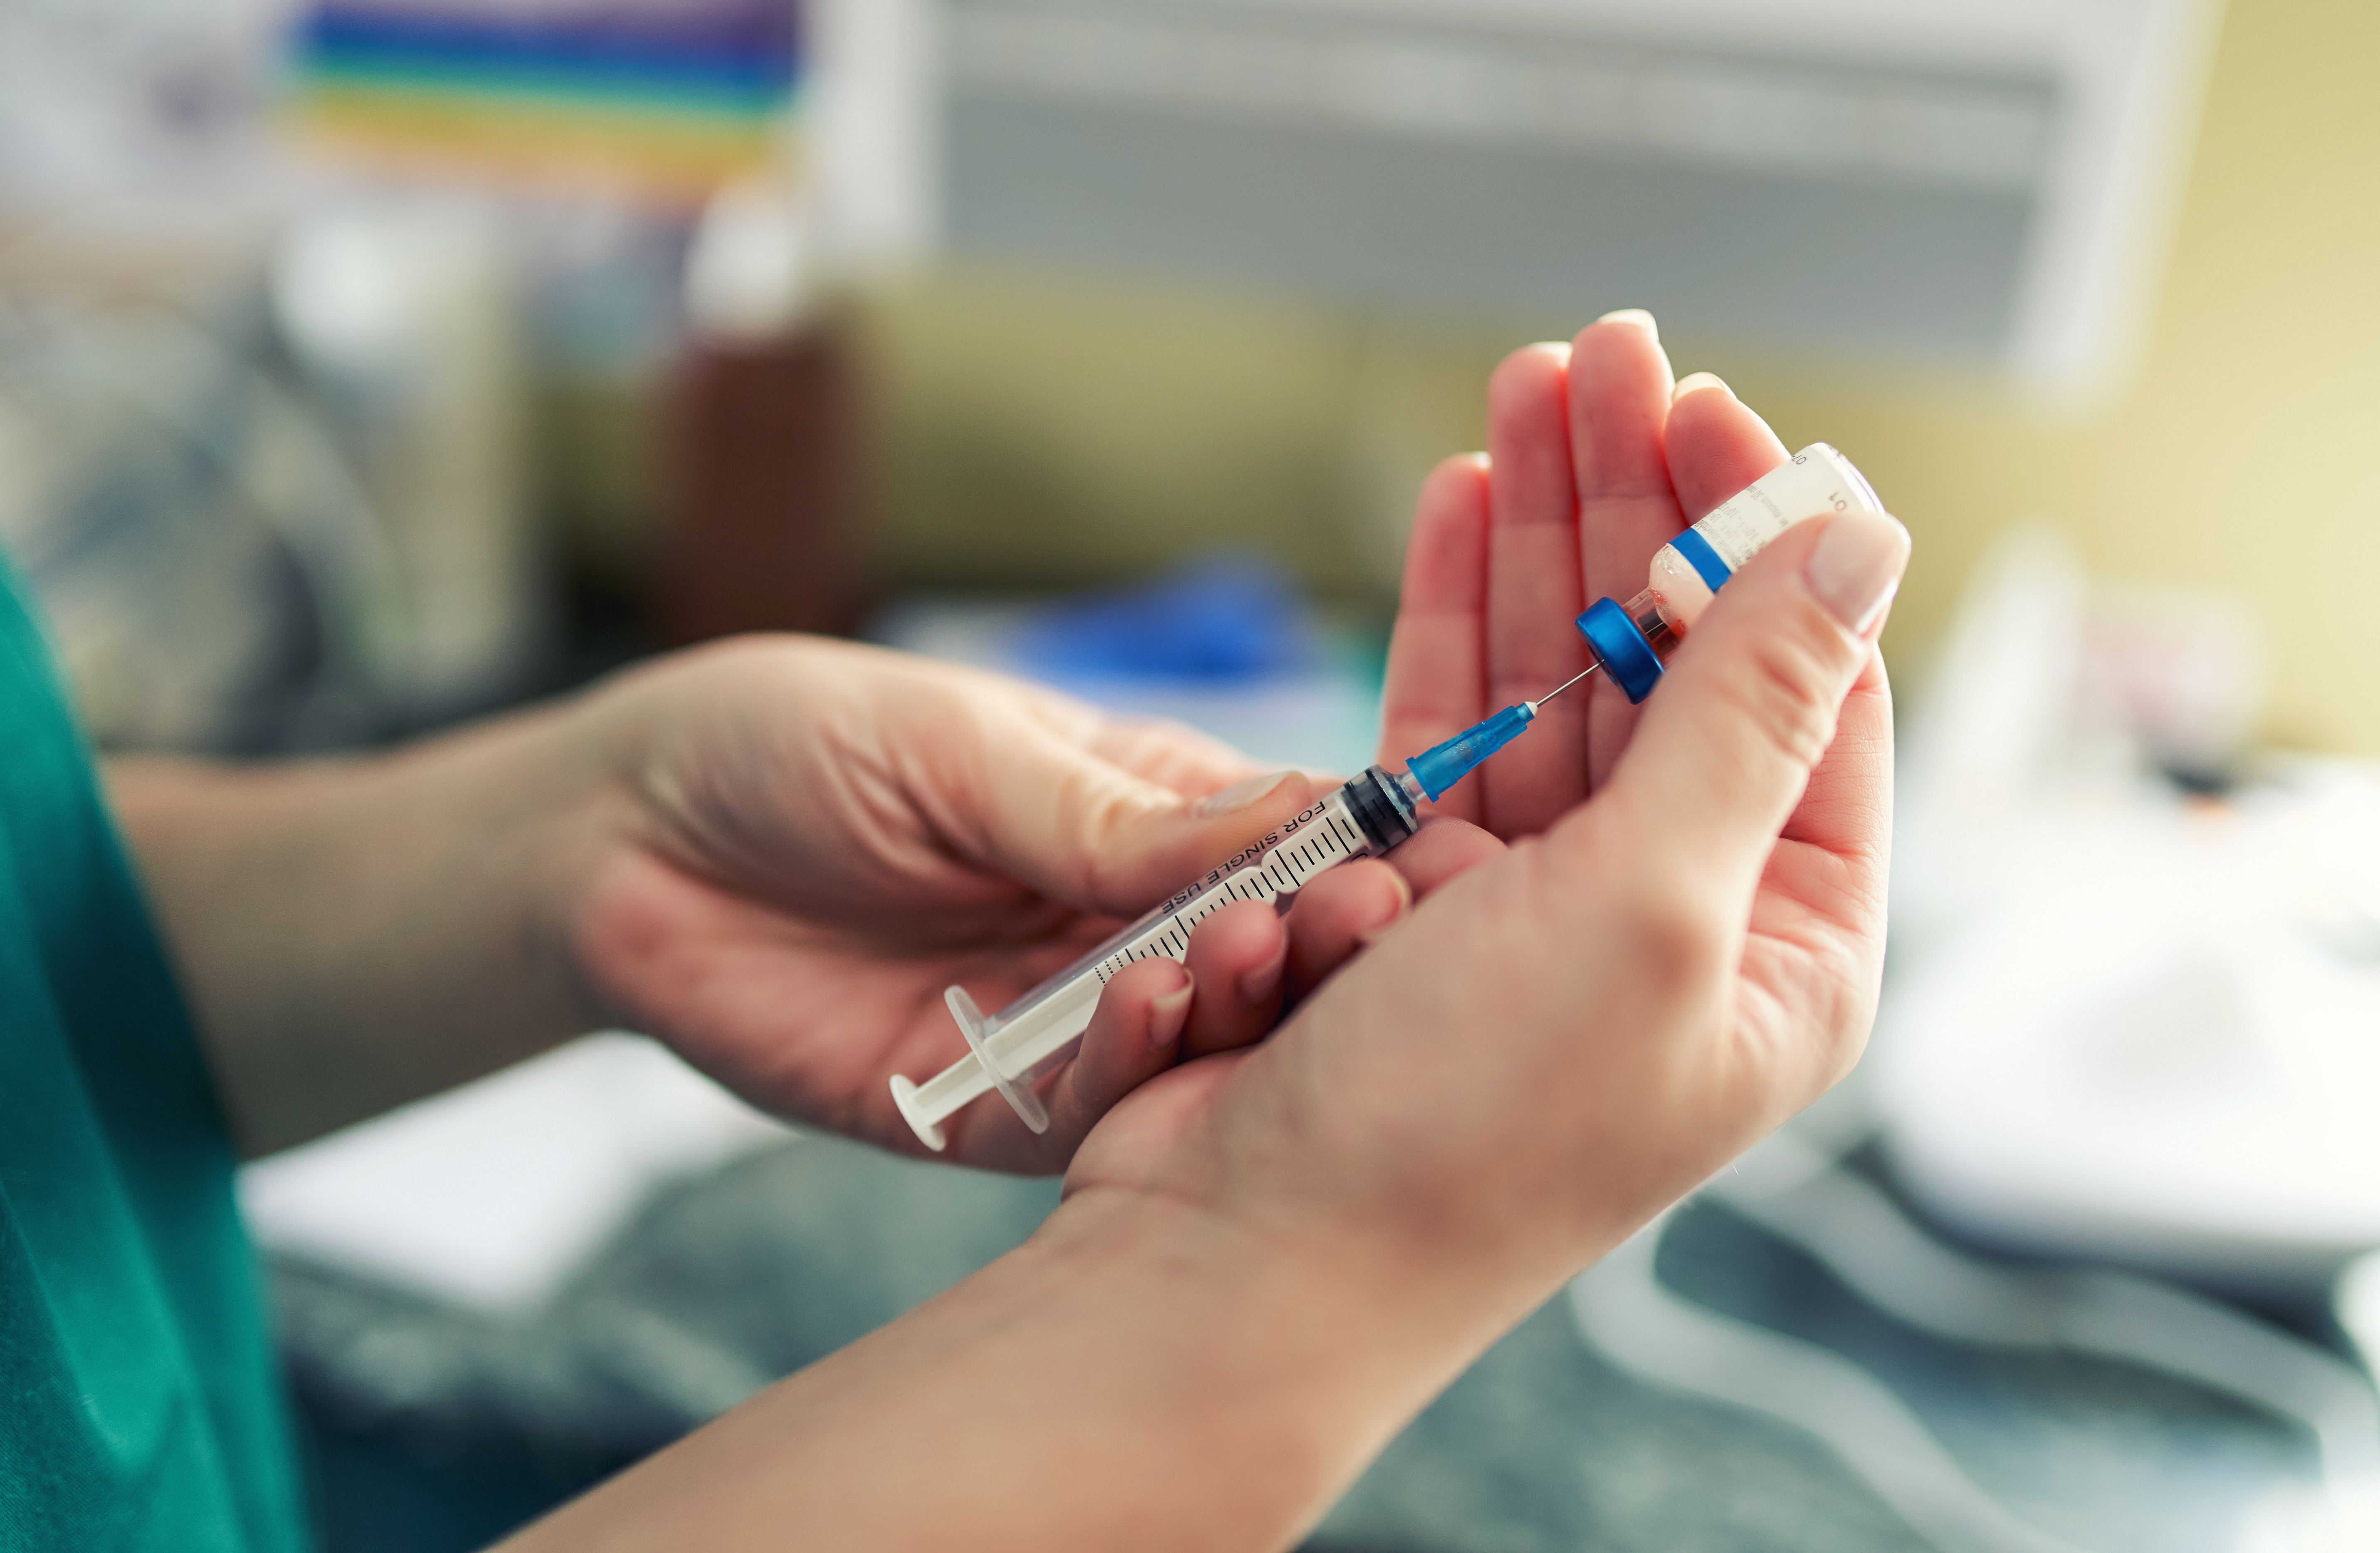 Le vaccin anti-Covid Johnson&Johnson confirmé par l'Agence européenne du médicament